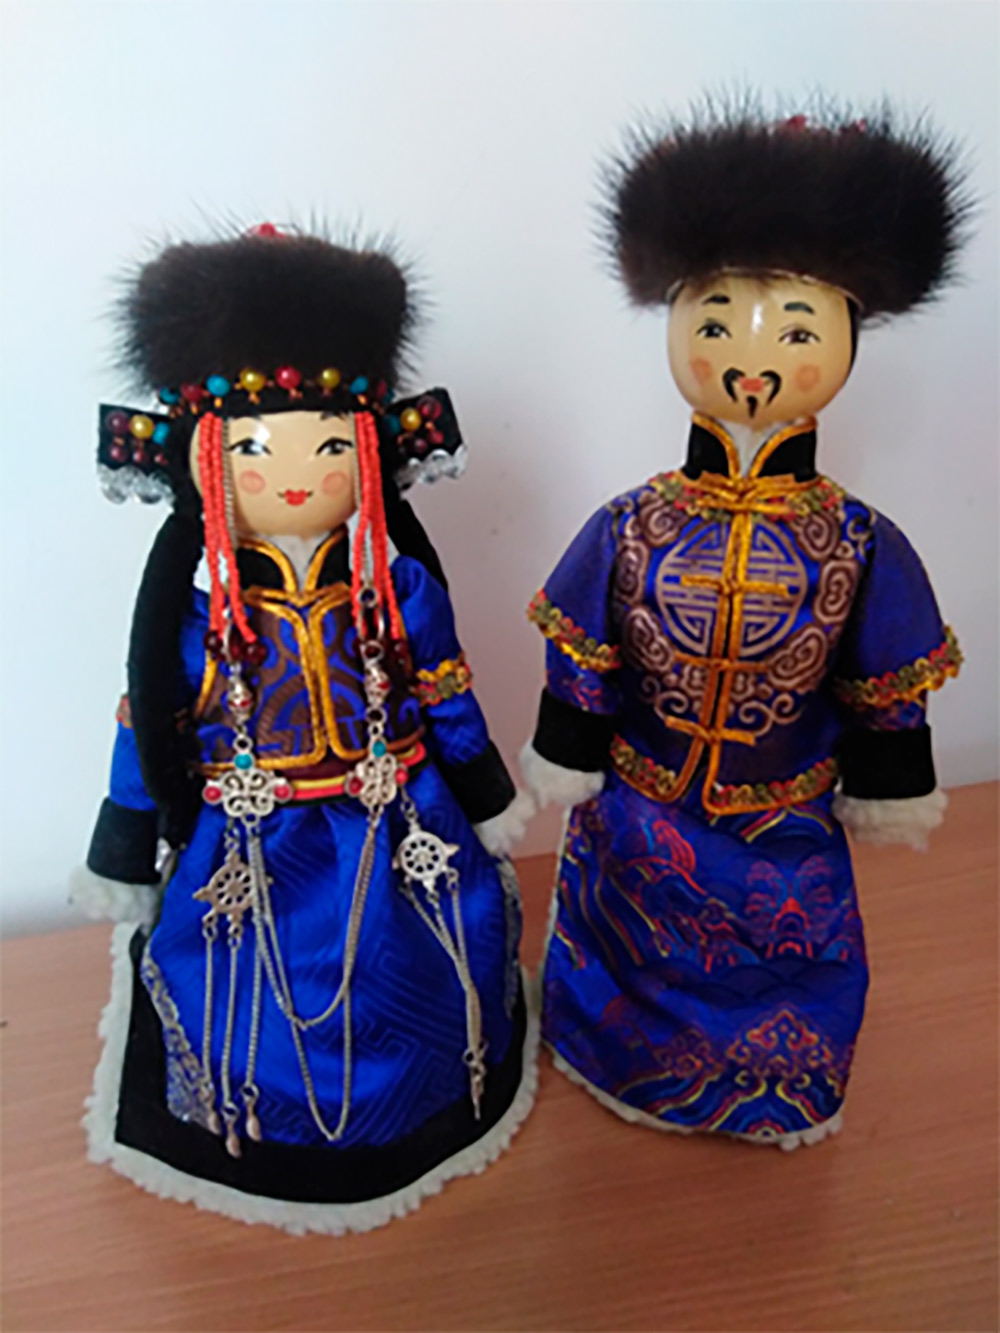 Сувенирные
  куклы в бурятской традиционной одежде
  
  
  Материал:
  дерево, текстиль, шитье, роспись